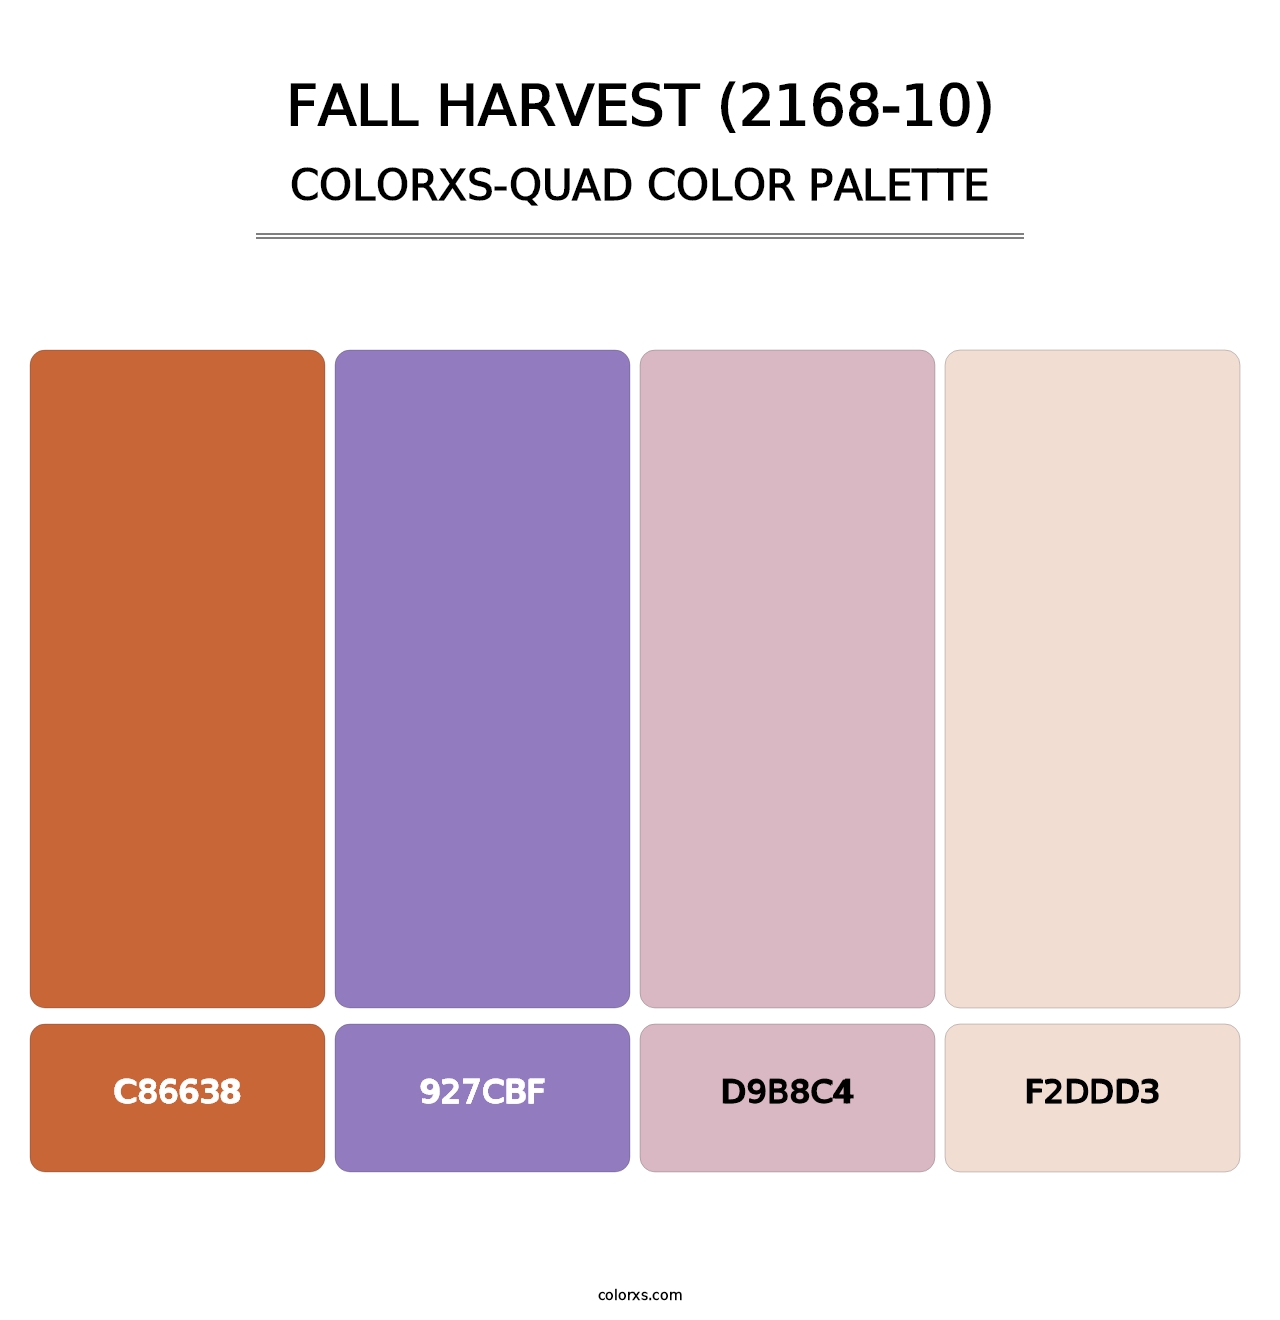 Fall Harvest (2168-10) - Colorxs Quad Palette